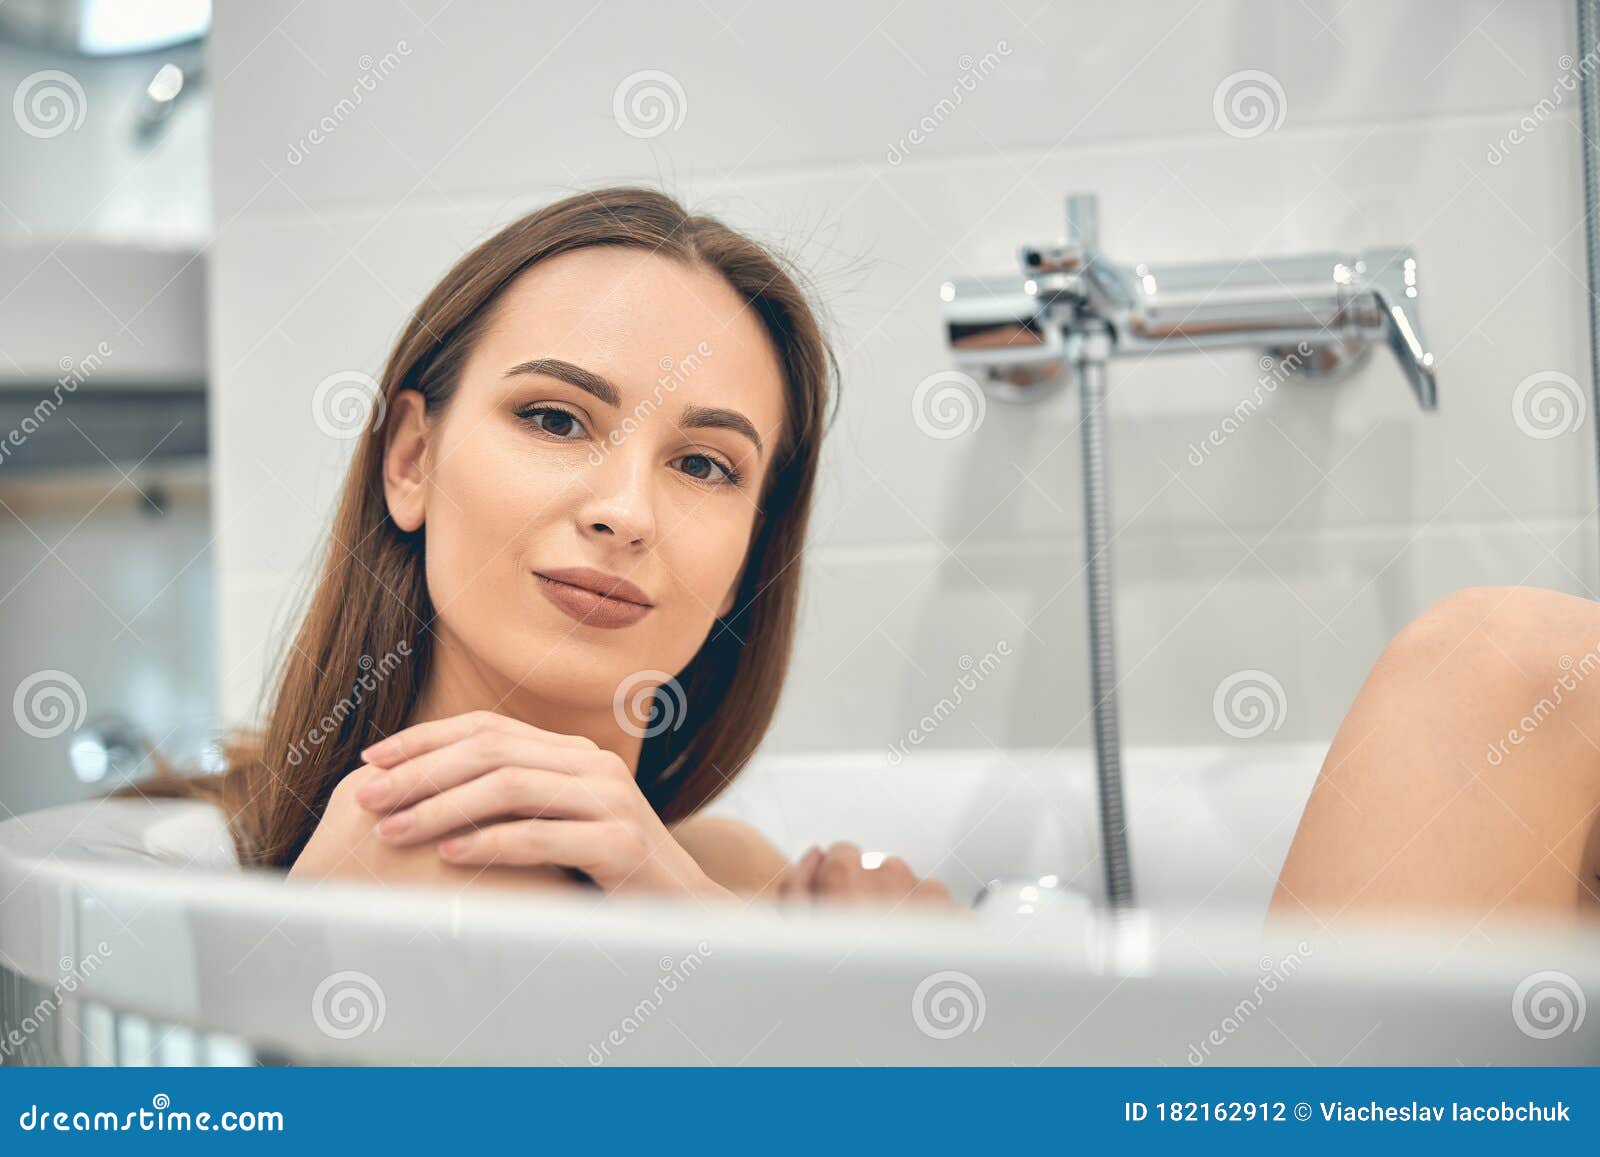 美女洗澡照片摄影图片_ID:410230432-Veer图库